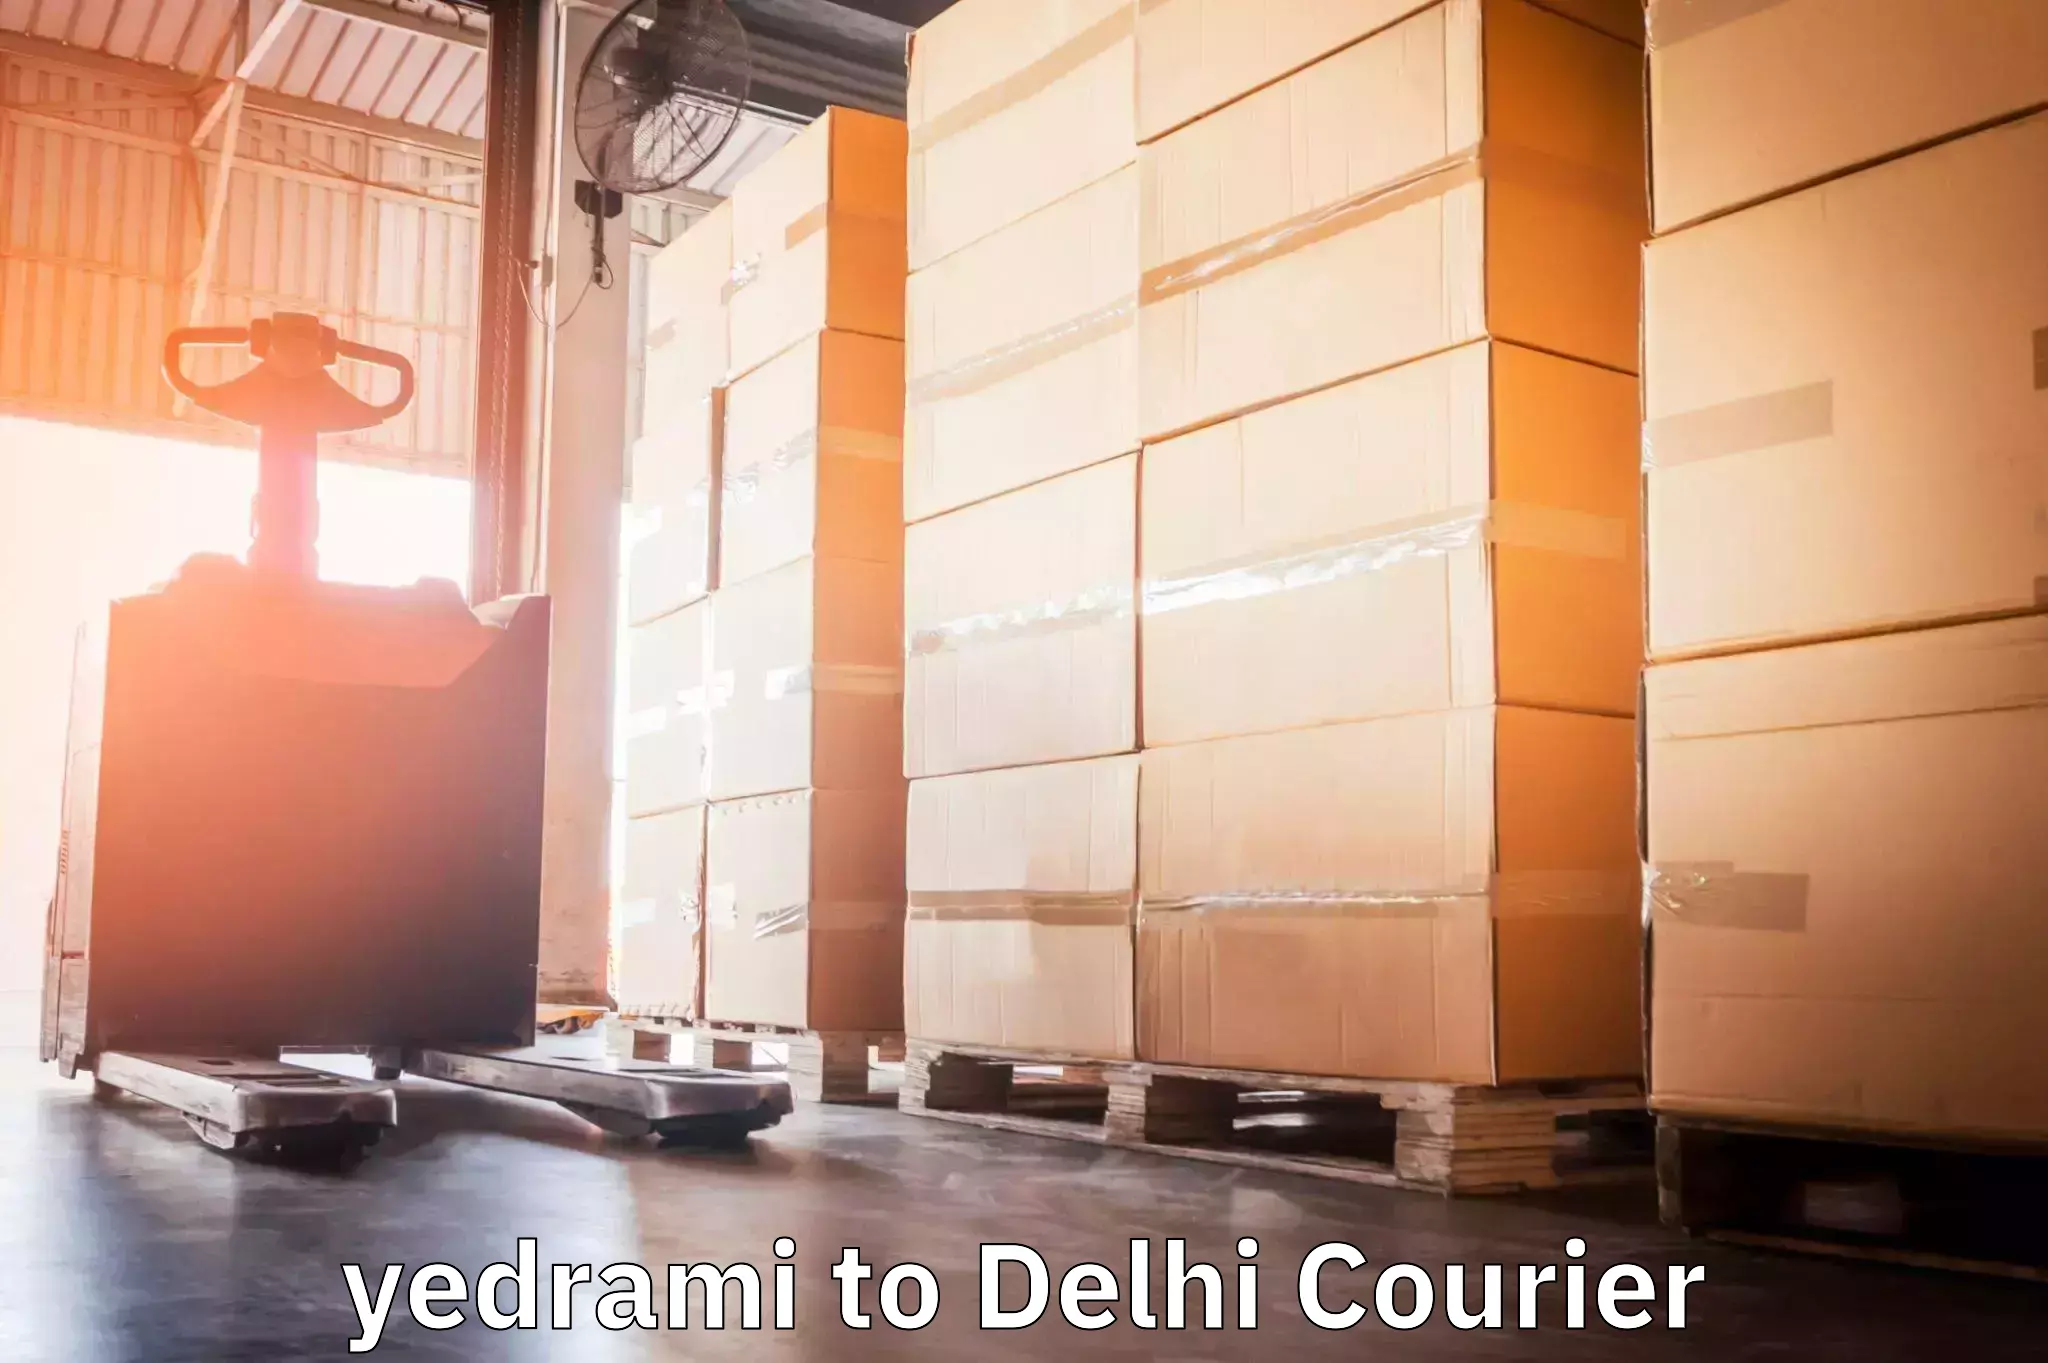 Professional courier handling yedrami to Jawaharlal Nehru University New Delhi